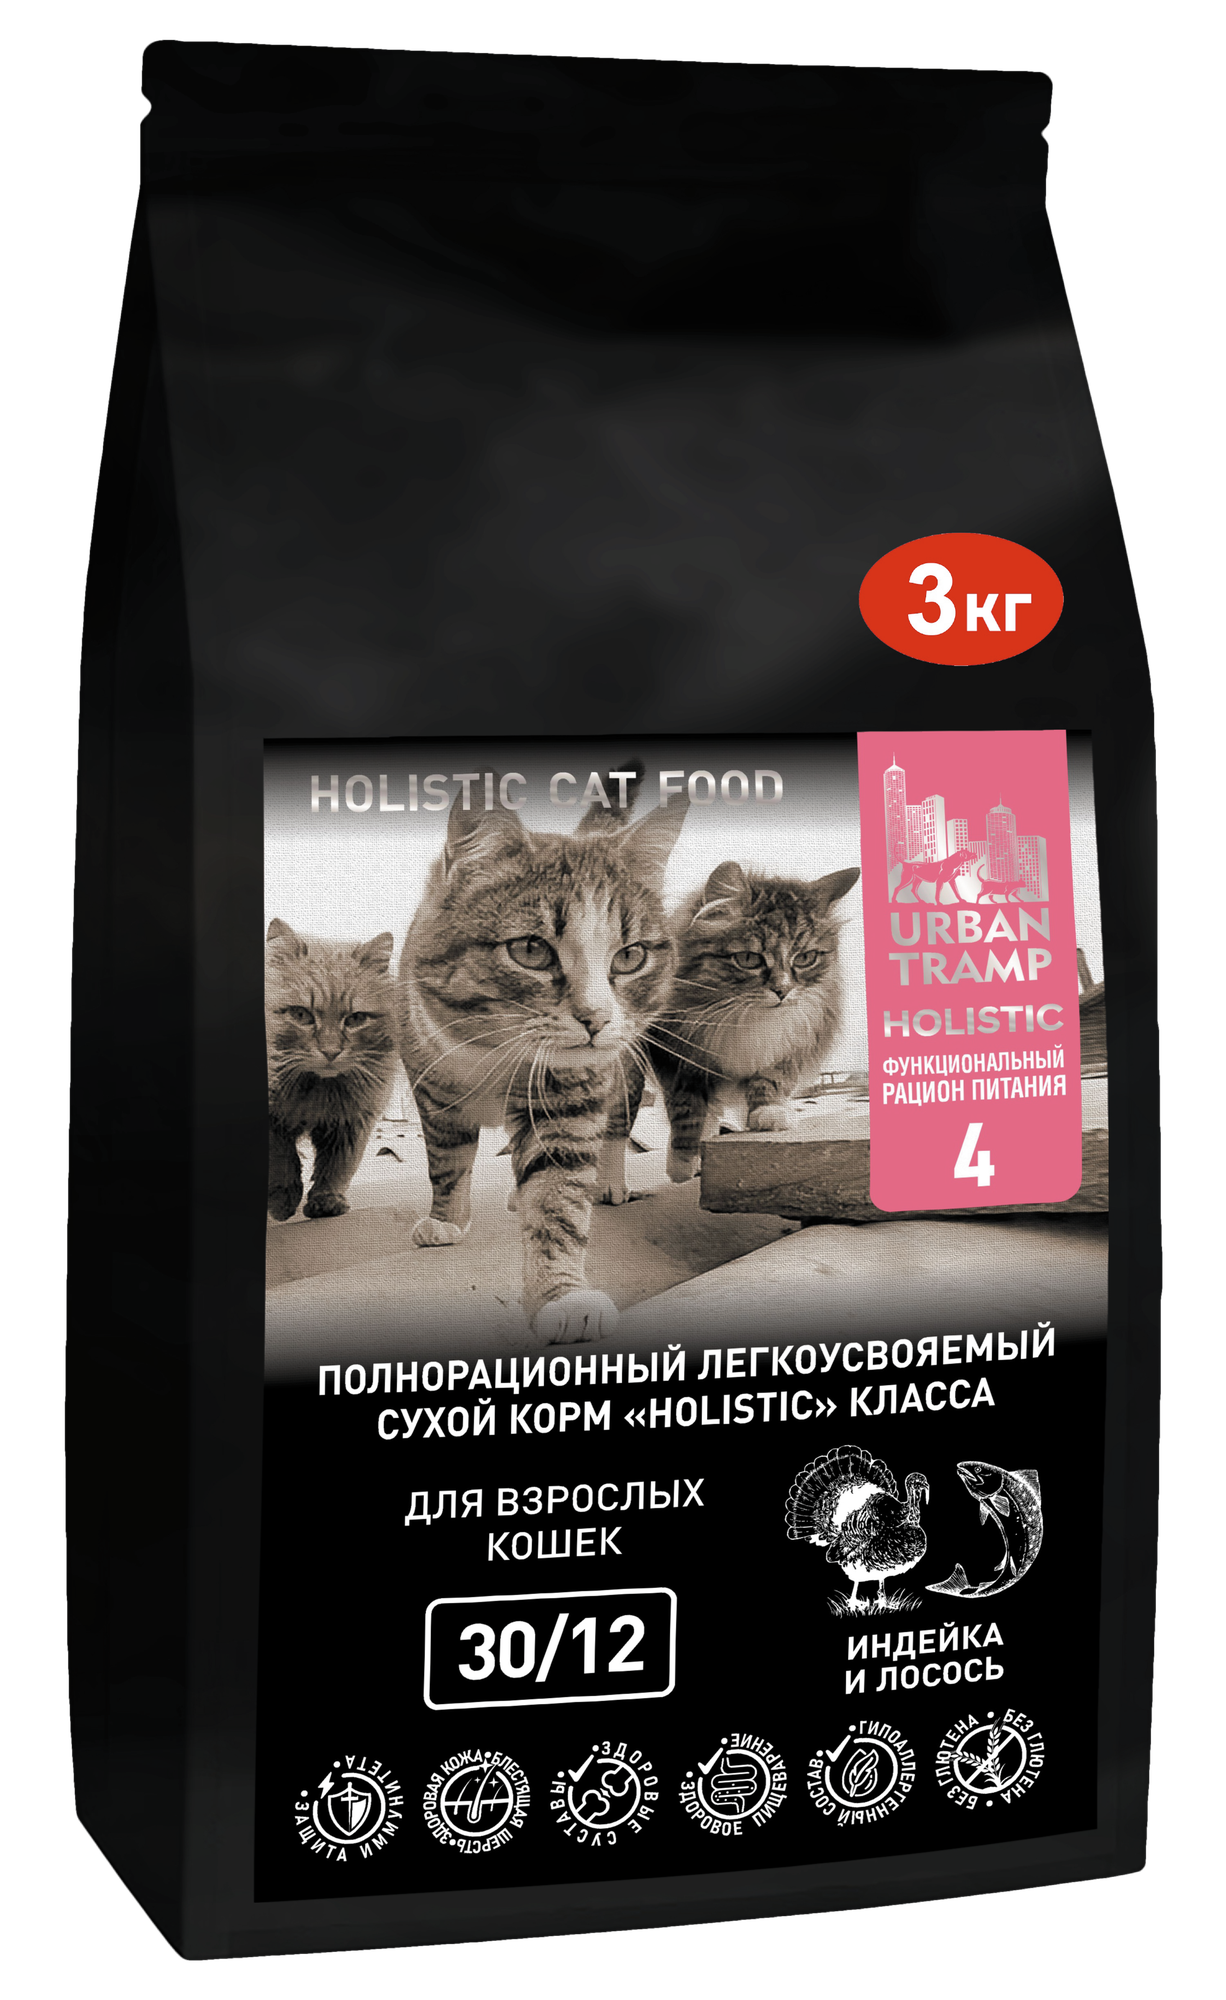 URBAN TRAMP - Полнорационный гипоаллергенный легкоусвояемый сухой корм HOLISTIC класса с индейкой и лососем для взрослых кошек